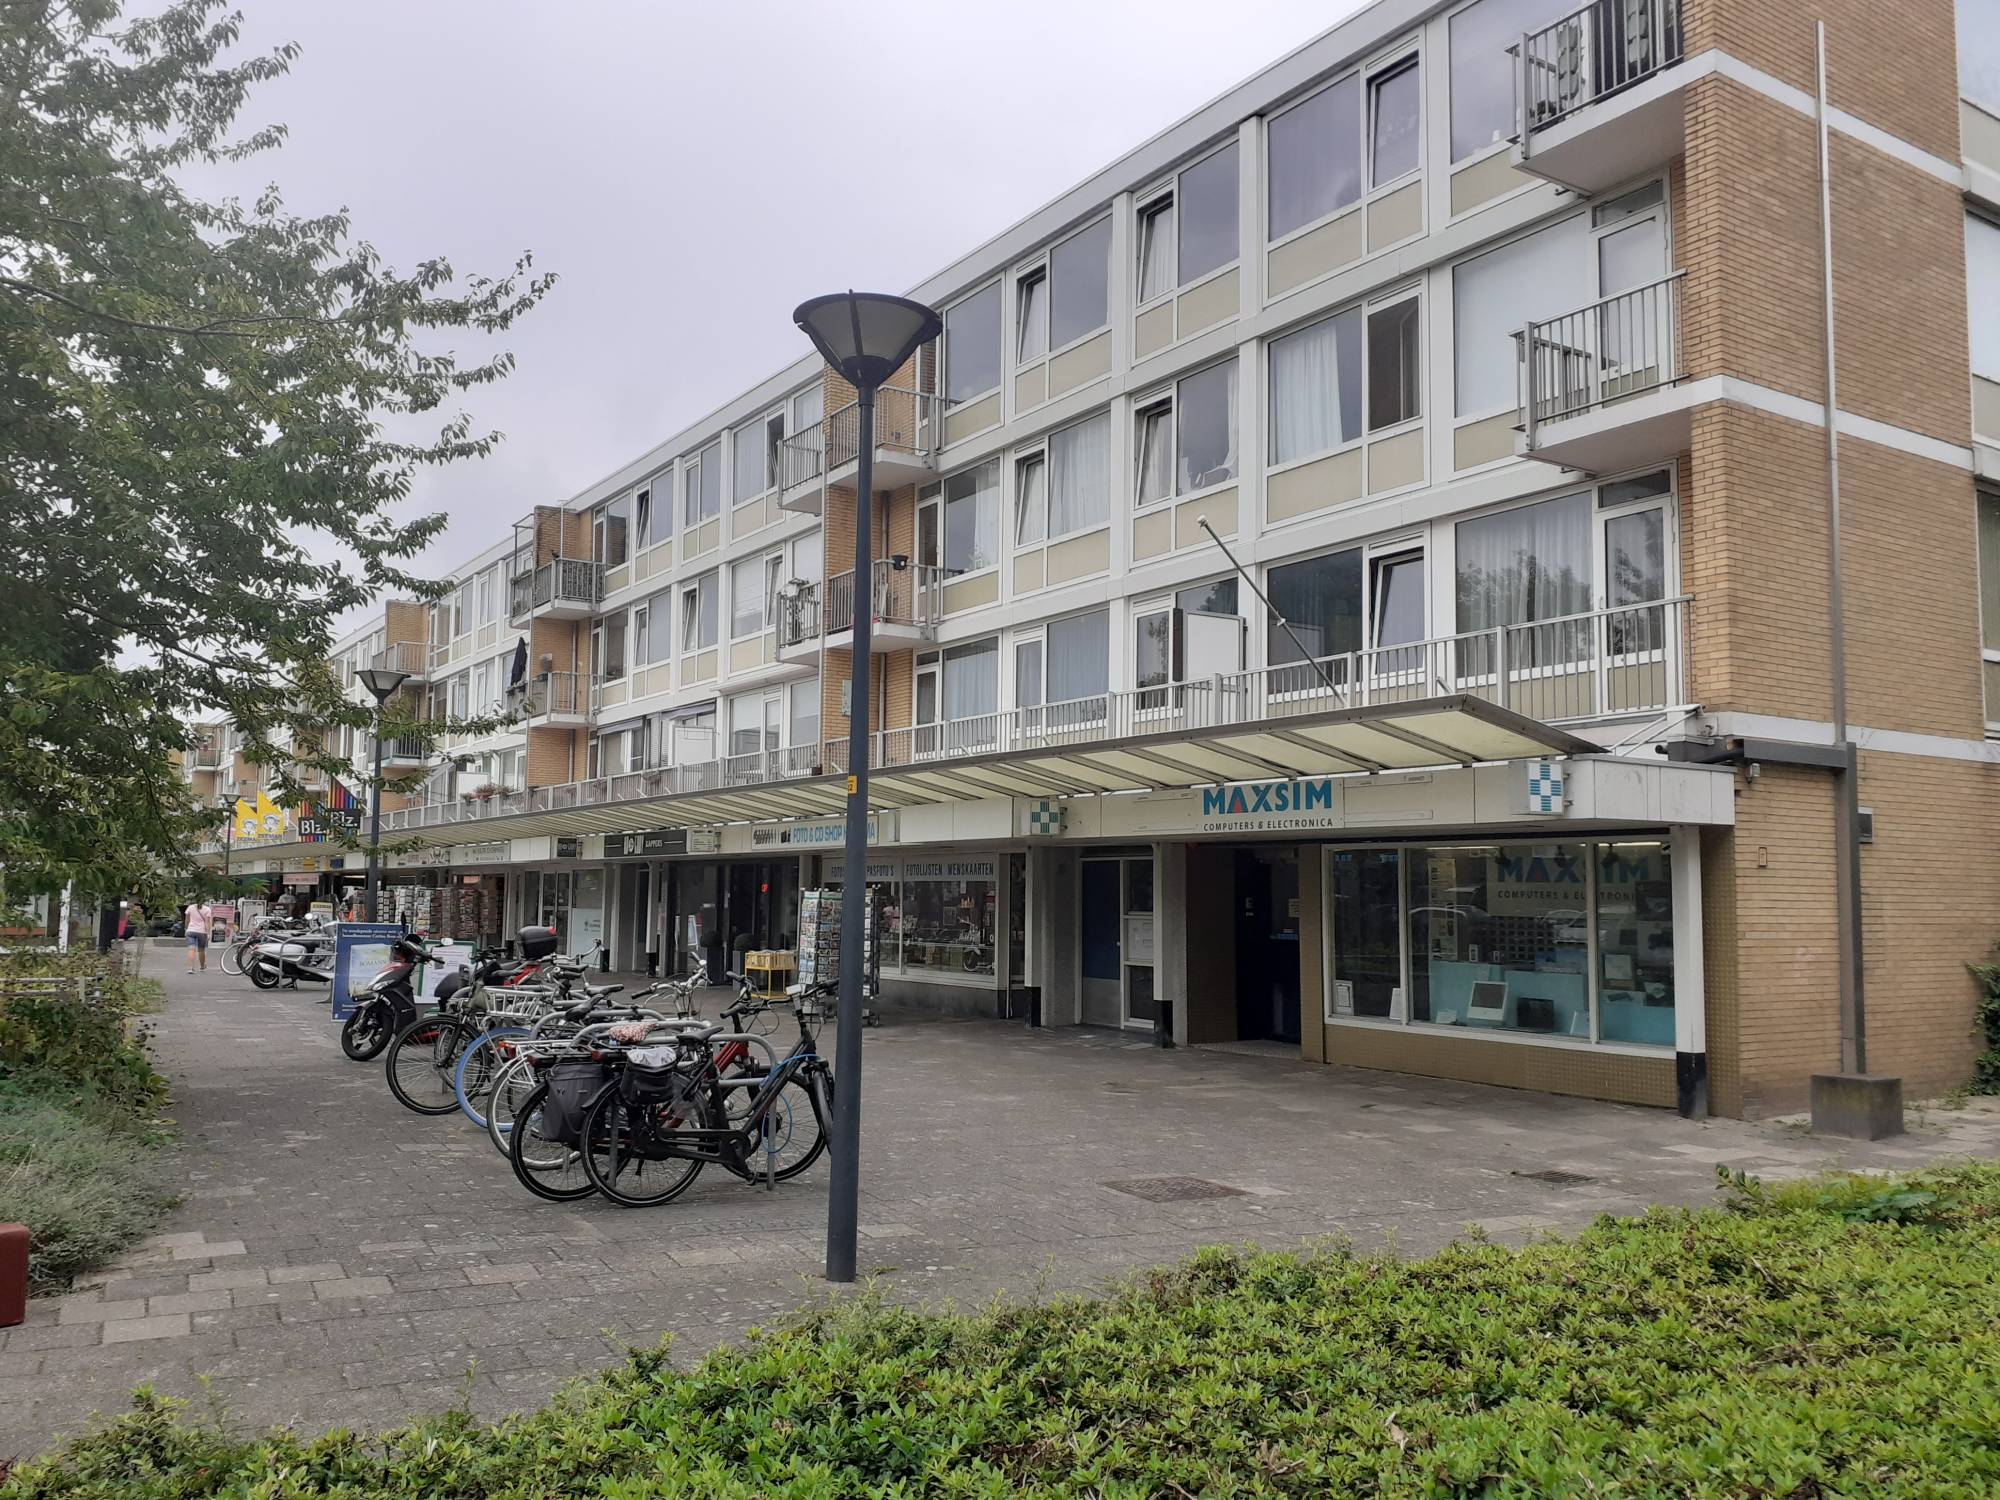 Bekijk for 1/18 van apartment in Badhoevedorp